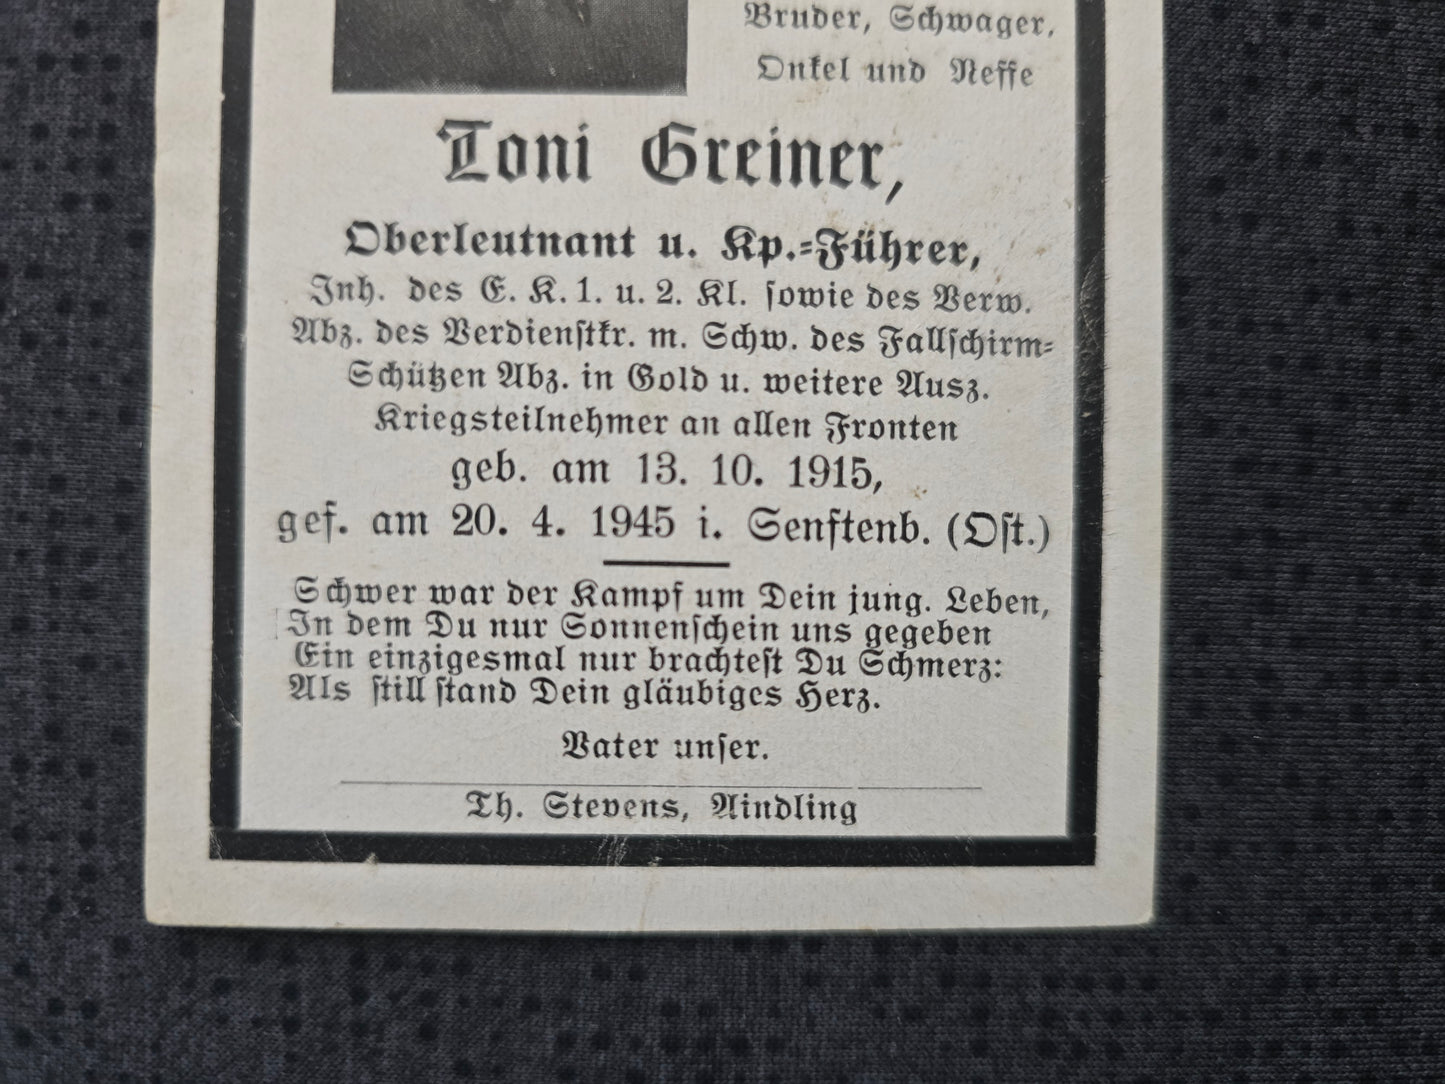 Sterbebild Oberleutnant Fallschirmjäger Regt. EK I&II Fallschirmschützen Abz. Gold Endkampf Senftenberg